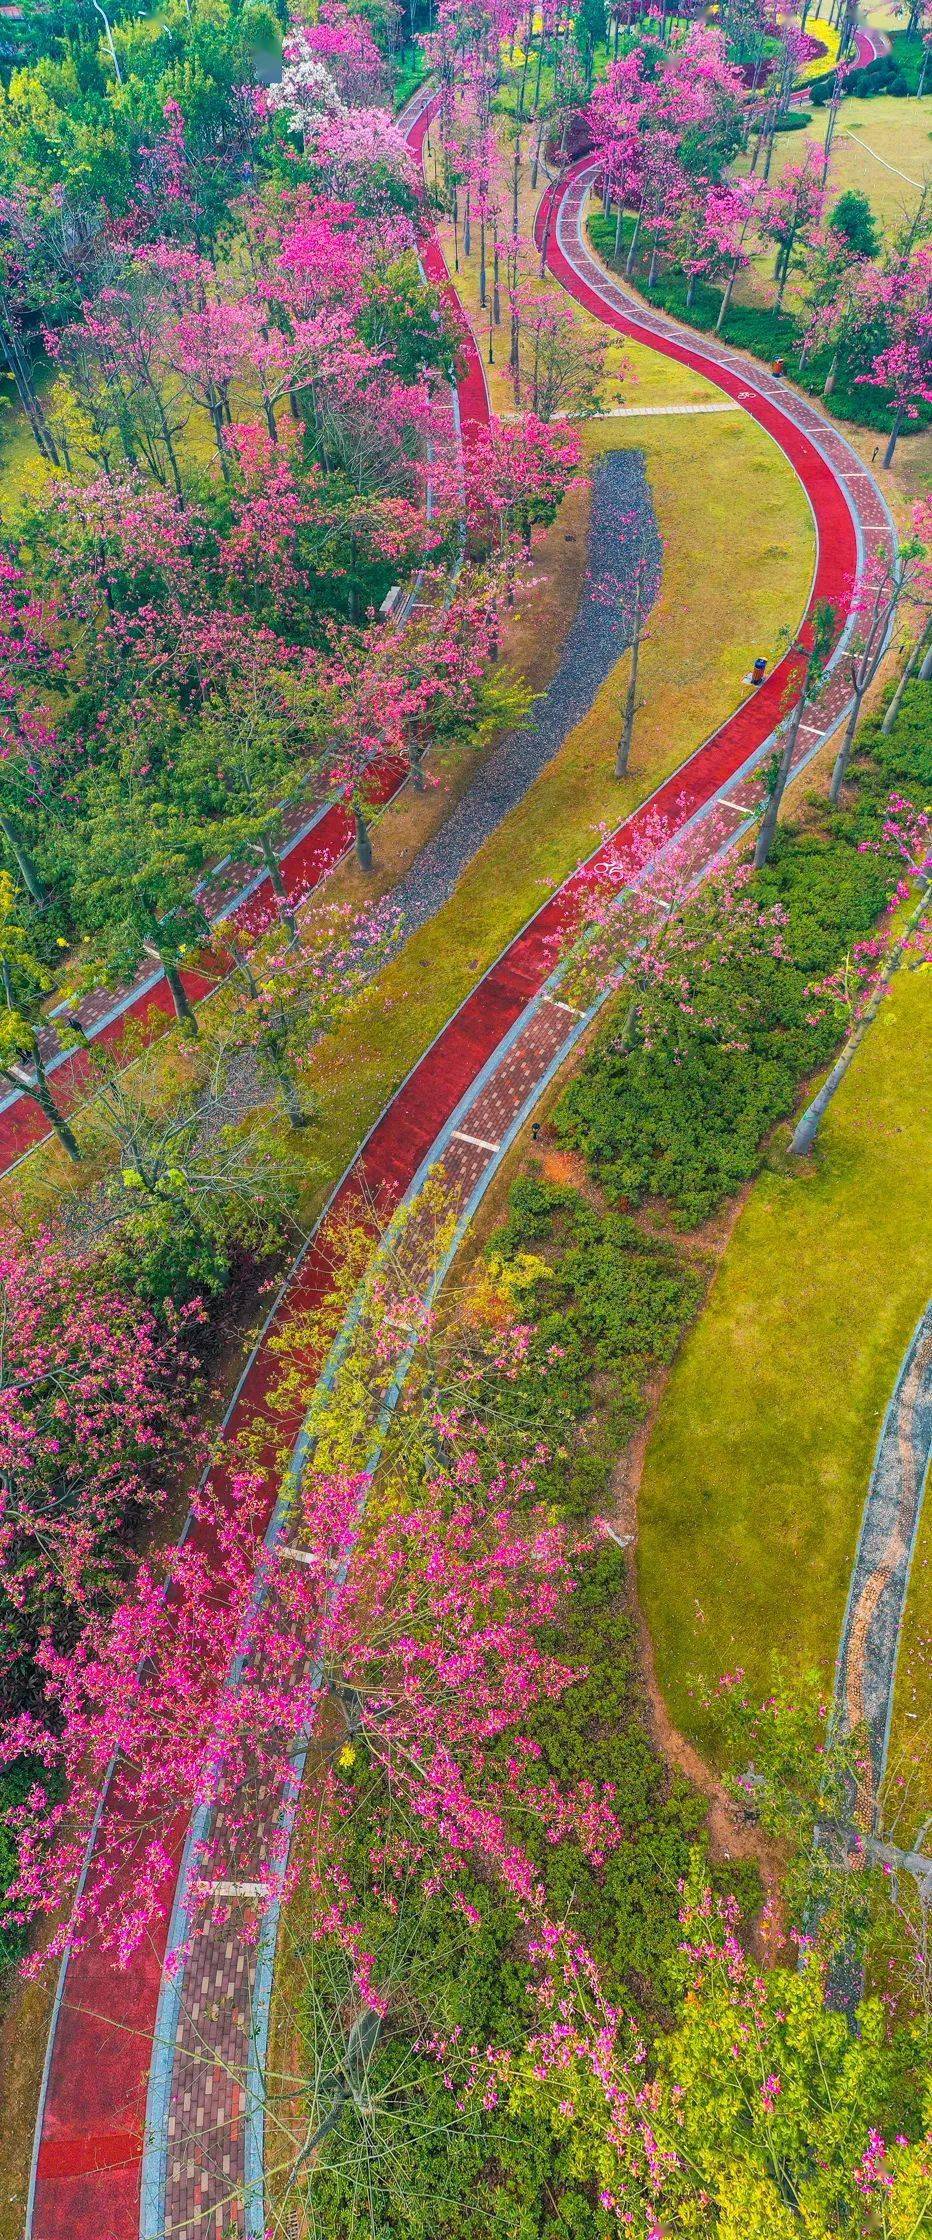 河道边,还是驿站外姹紫嫣红的花海长廊,绵延14公里东至横琴大桥,西南